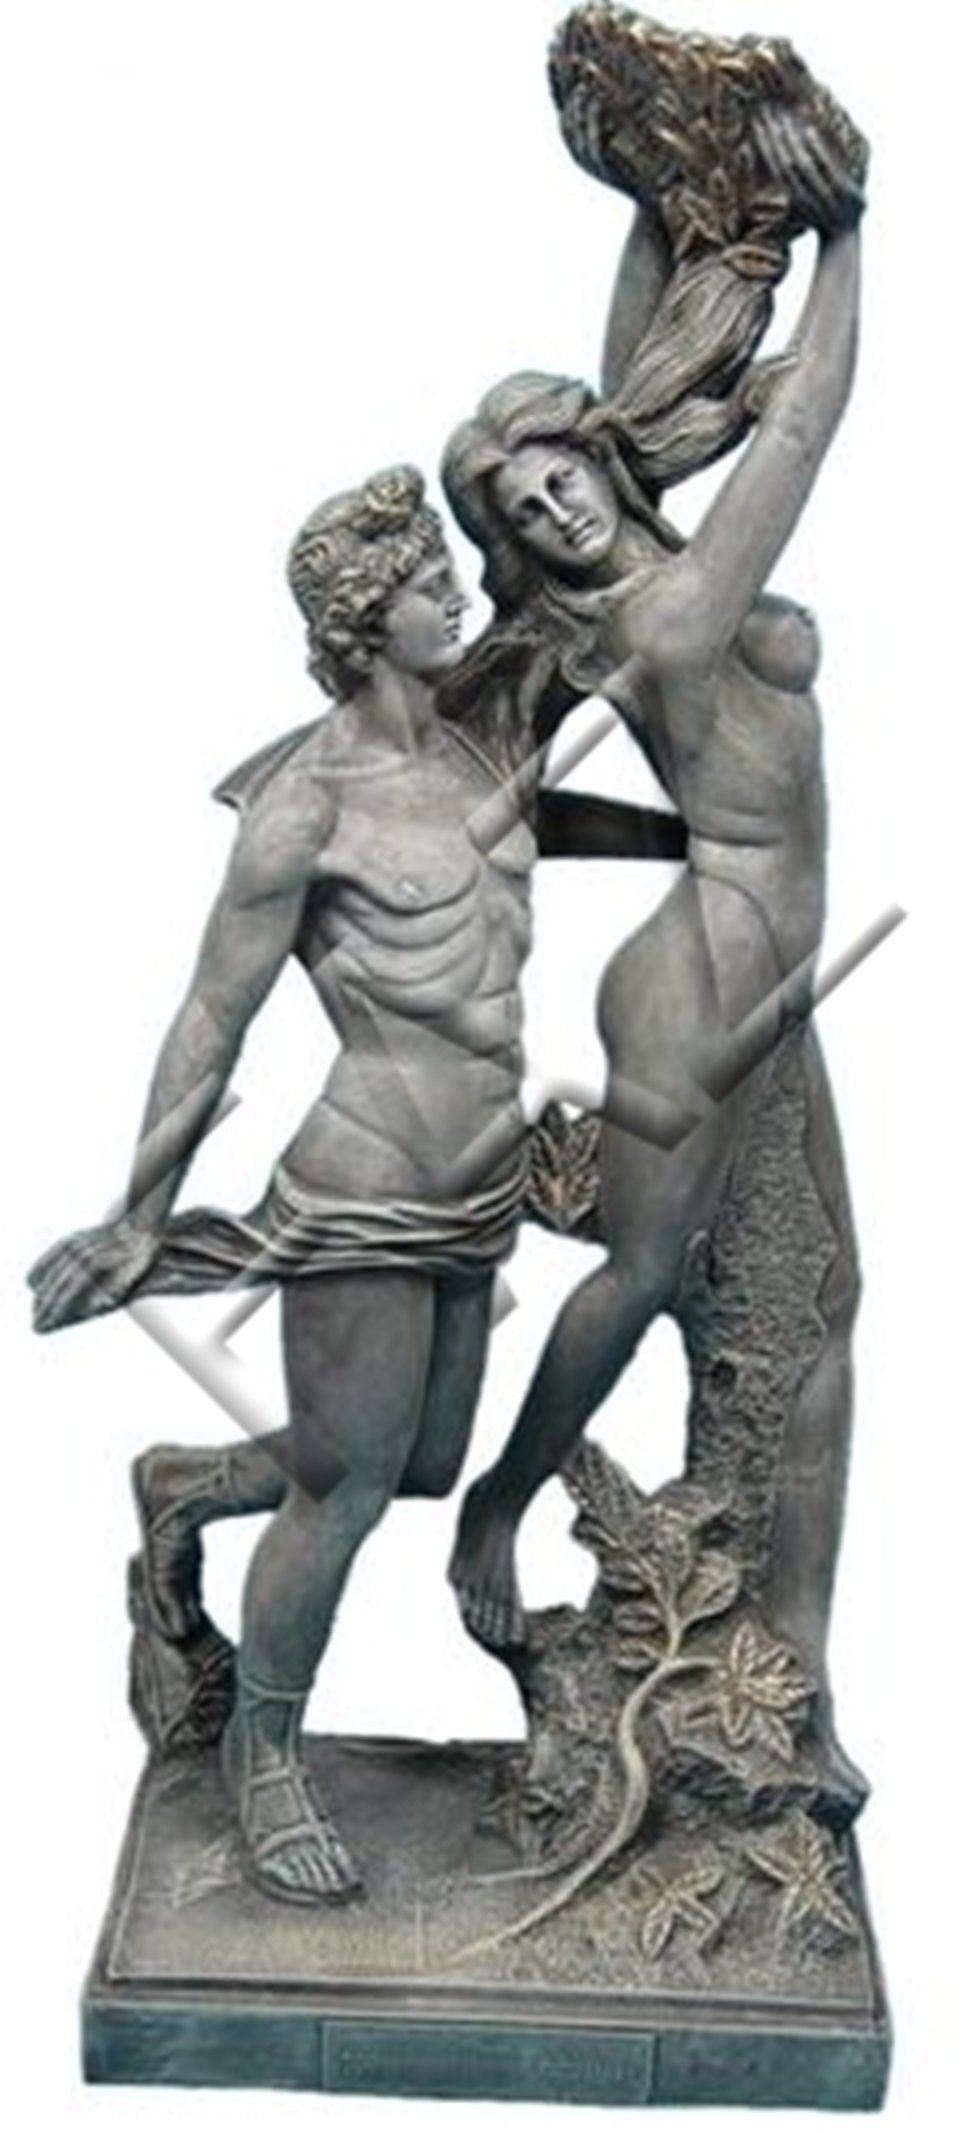 Neu Design Statue Grau Griechische JVmoebel Skulptur Skulpturen Deko Figur Dekoration Skulptur Figuren